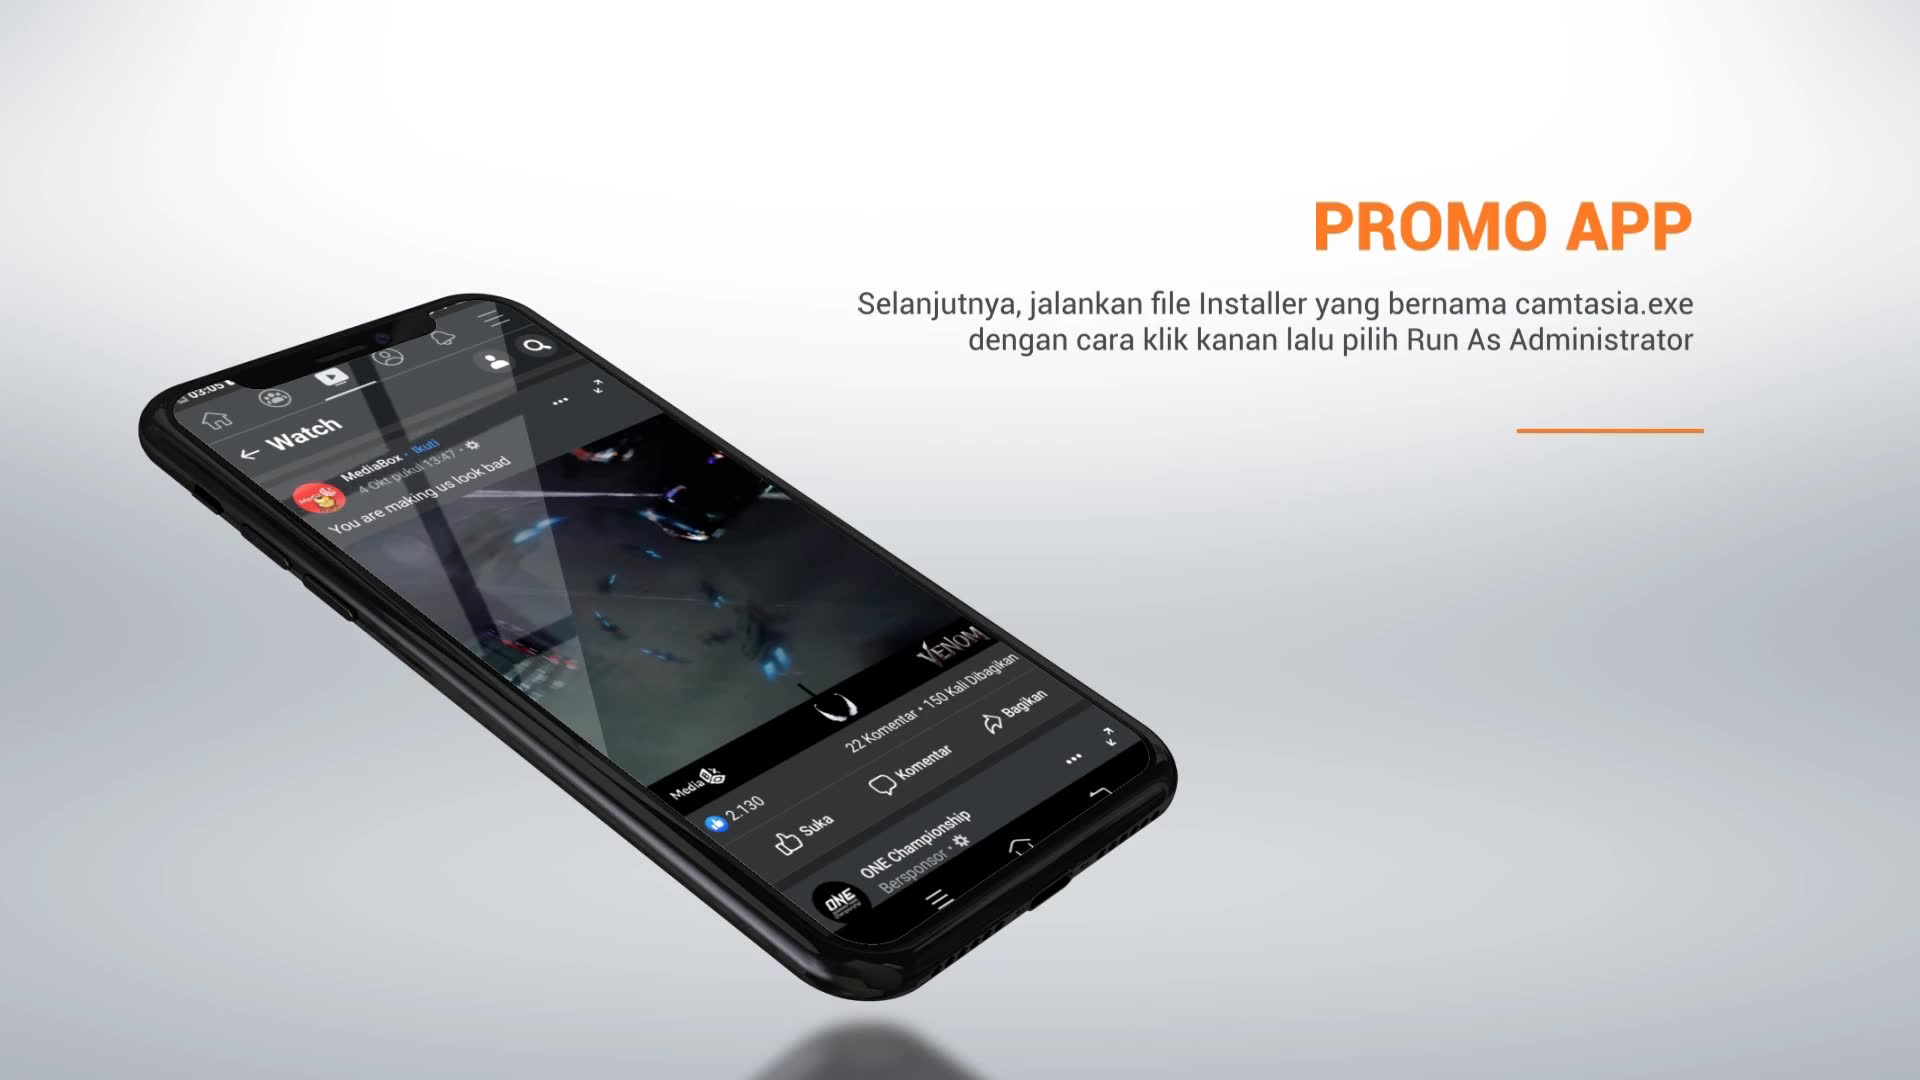 Clean App Promo Premiere Videohive 25961833 Premiere Pro Image 2